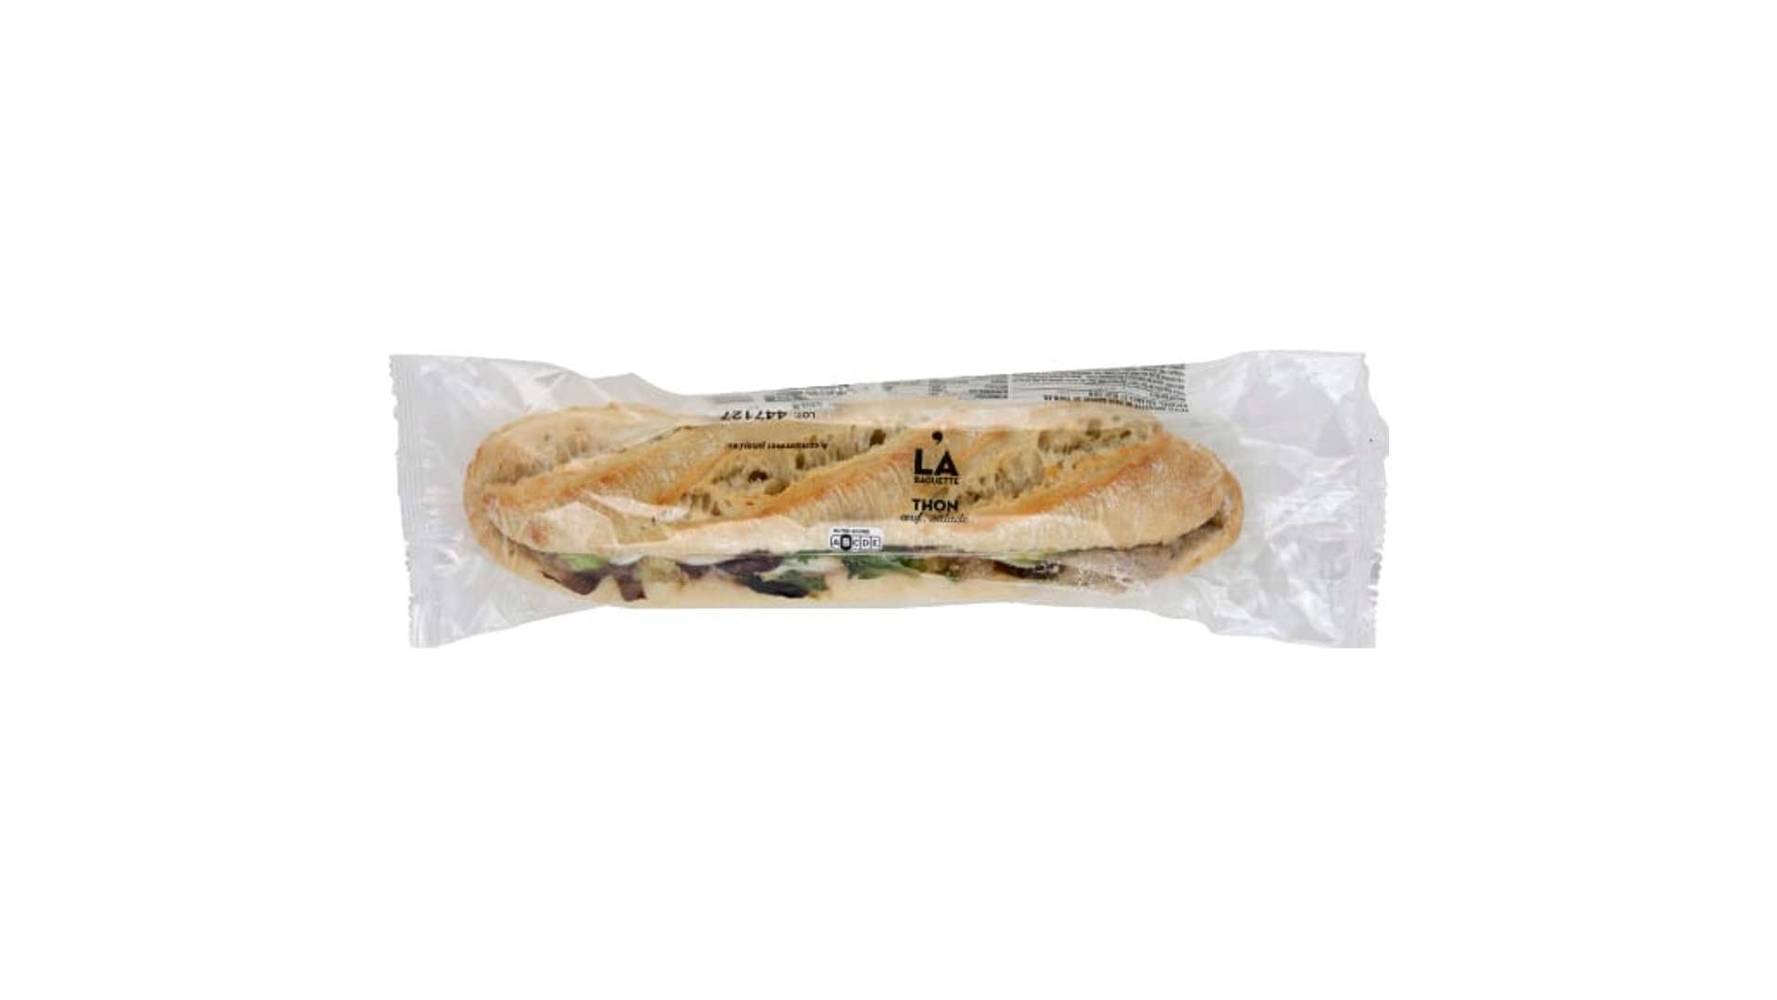 Monoprix Petite baguette de pain garnie de thon au naturel, salades et oeuf La baguette de 220g